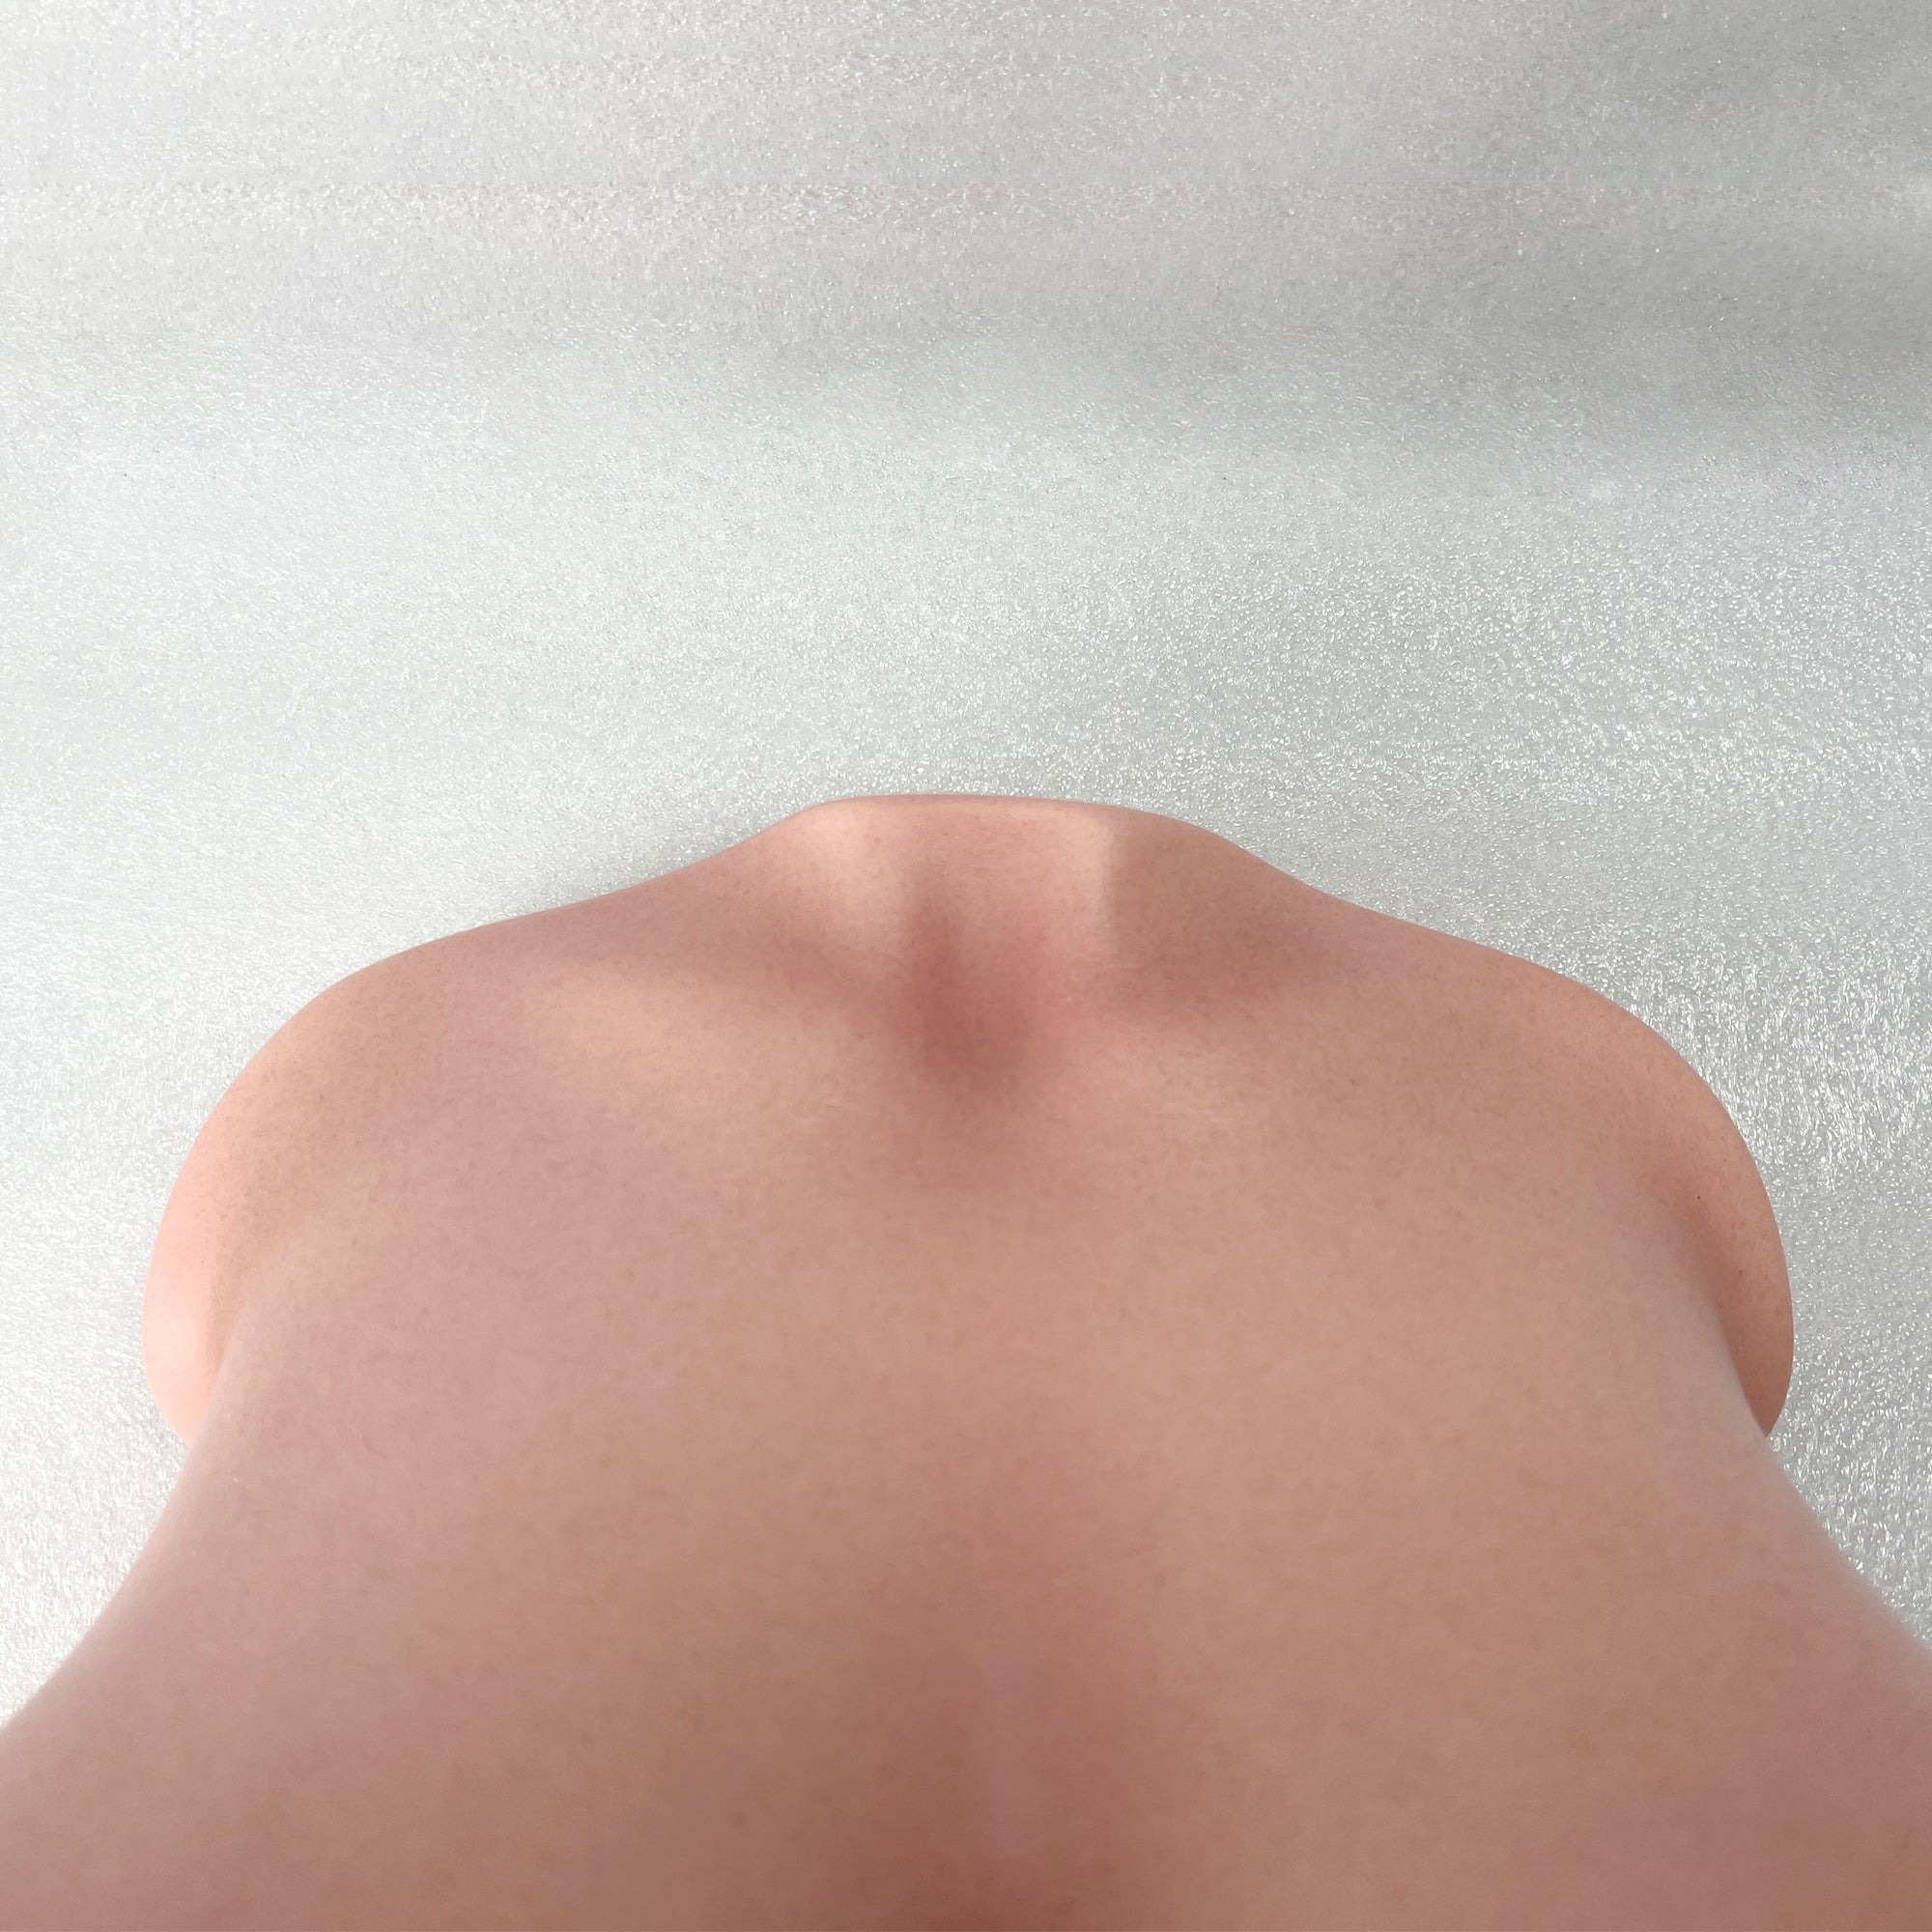 CLIMAX DOLL - Silicone Torso Breast #92